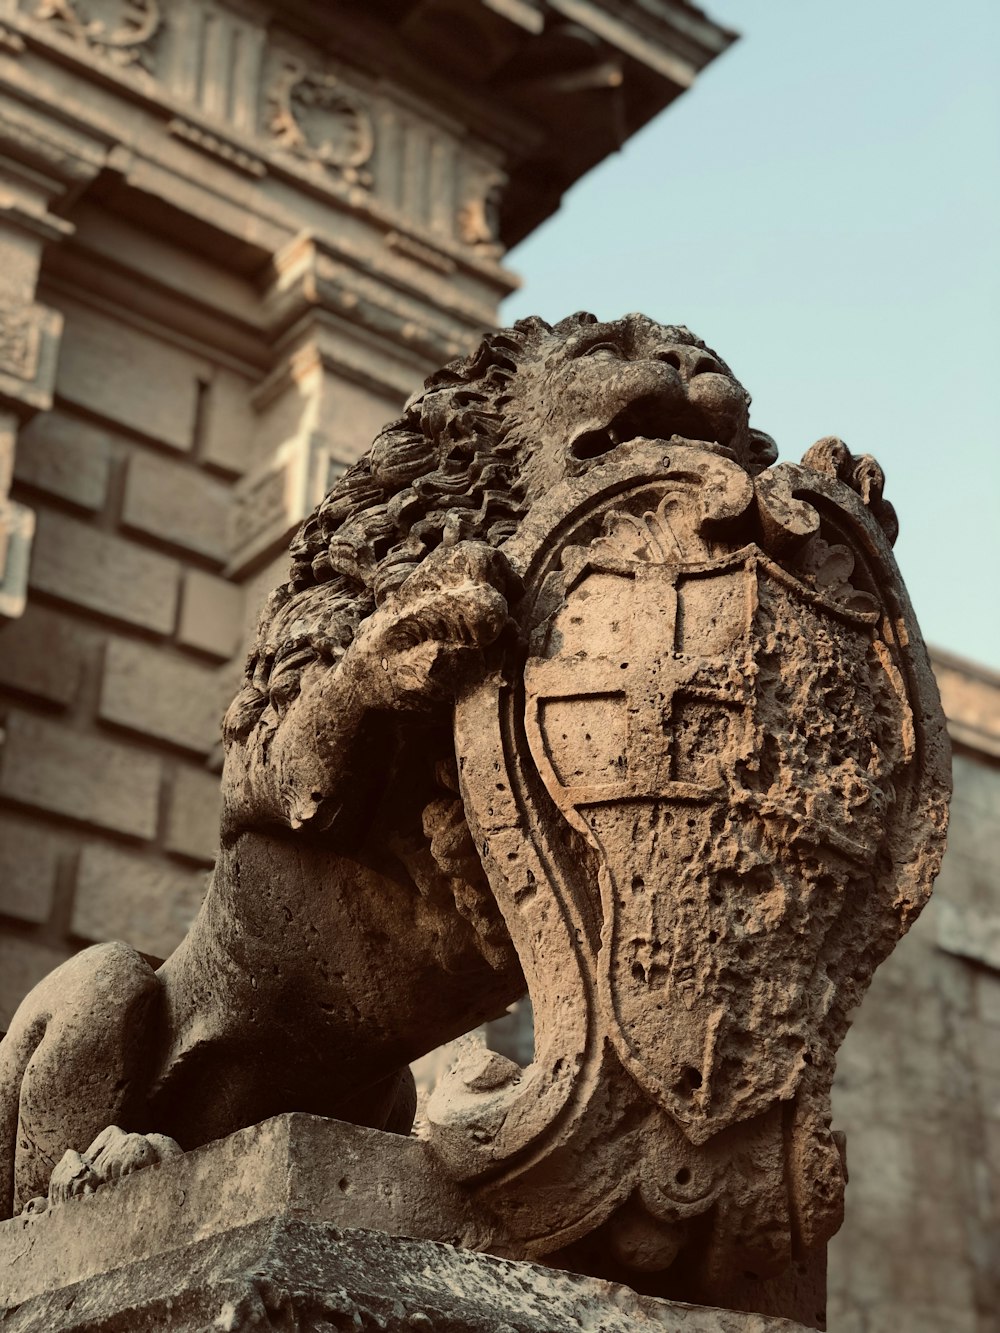 Statua del leone